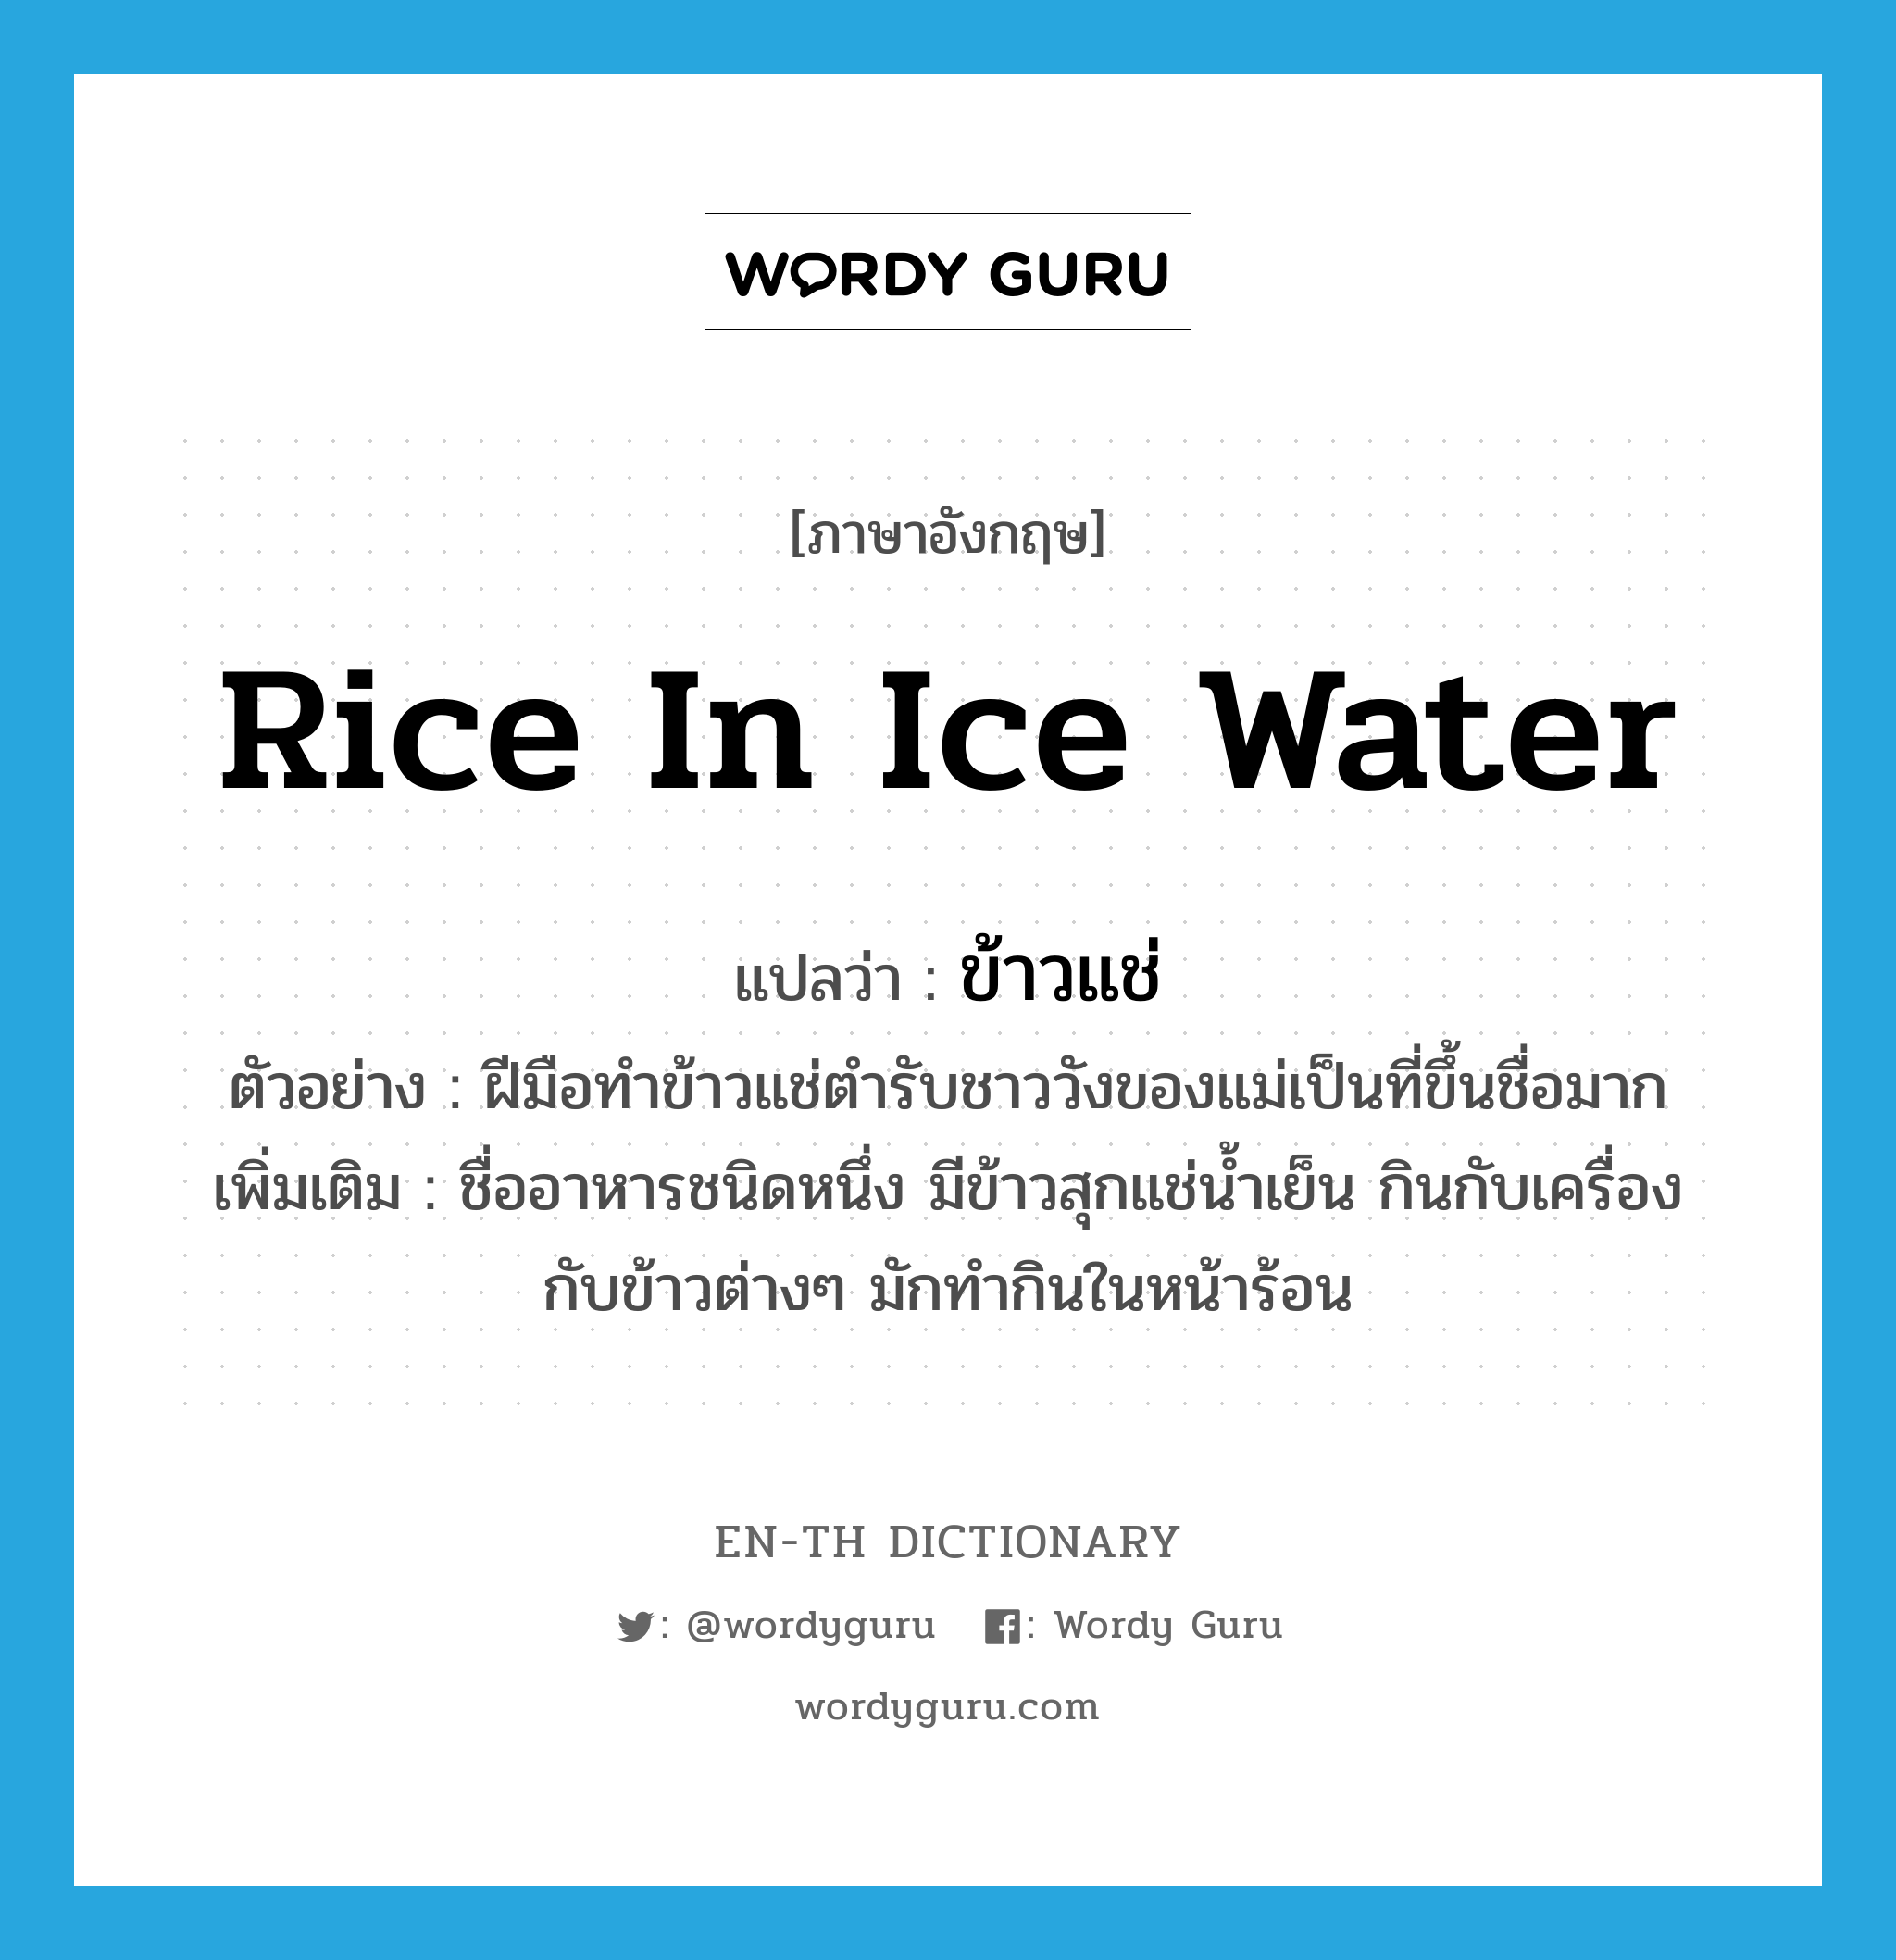 rice in ice water แปลว่า?, คำศัพท์ภาษาอังกฤษ rice in ice water แปลว่า ข้าวแช่ ประเภท N ตัวอย่าง ฝีมือทำข้าวแช่ตำรับชาววังของแม่เป็นที่ขึ้นชื่อมาก เพิ่มเติม ชื่ออาหารชนิดหนึ่ง มีข้าวสุกแช่น้ำเย็น กินกับเครื่องกับข้าวต่างๆ มักทำกินในหน้าร้อน หมวด N